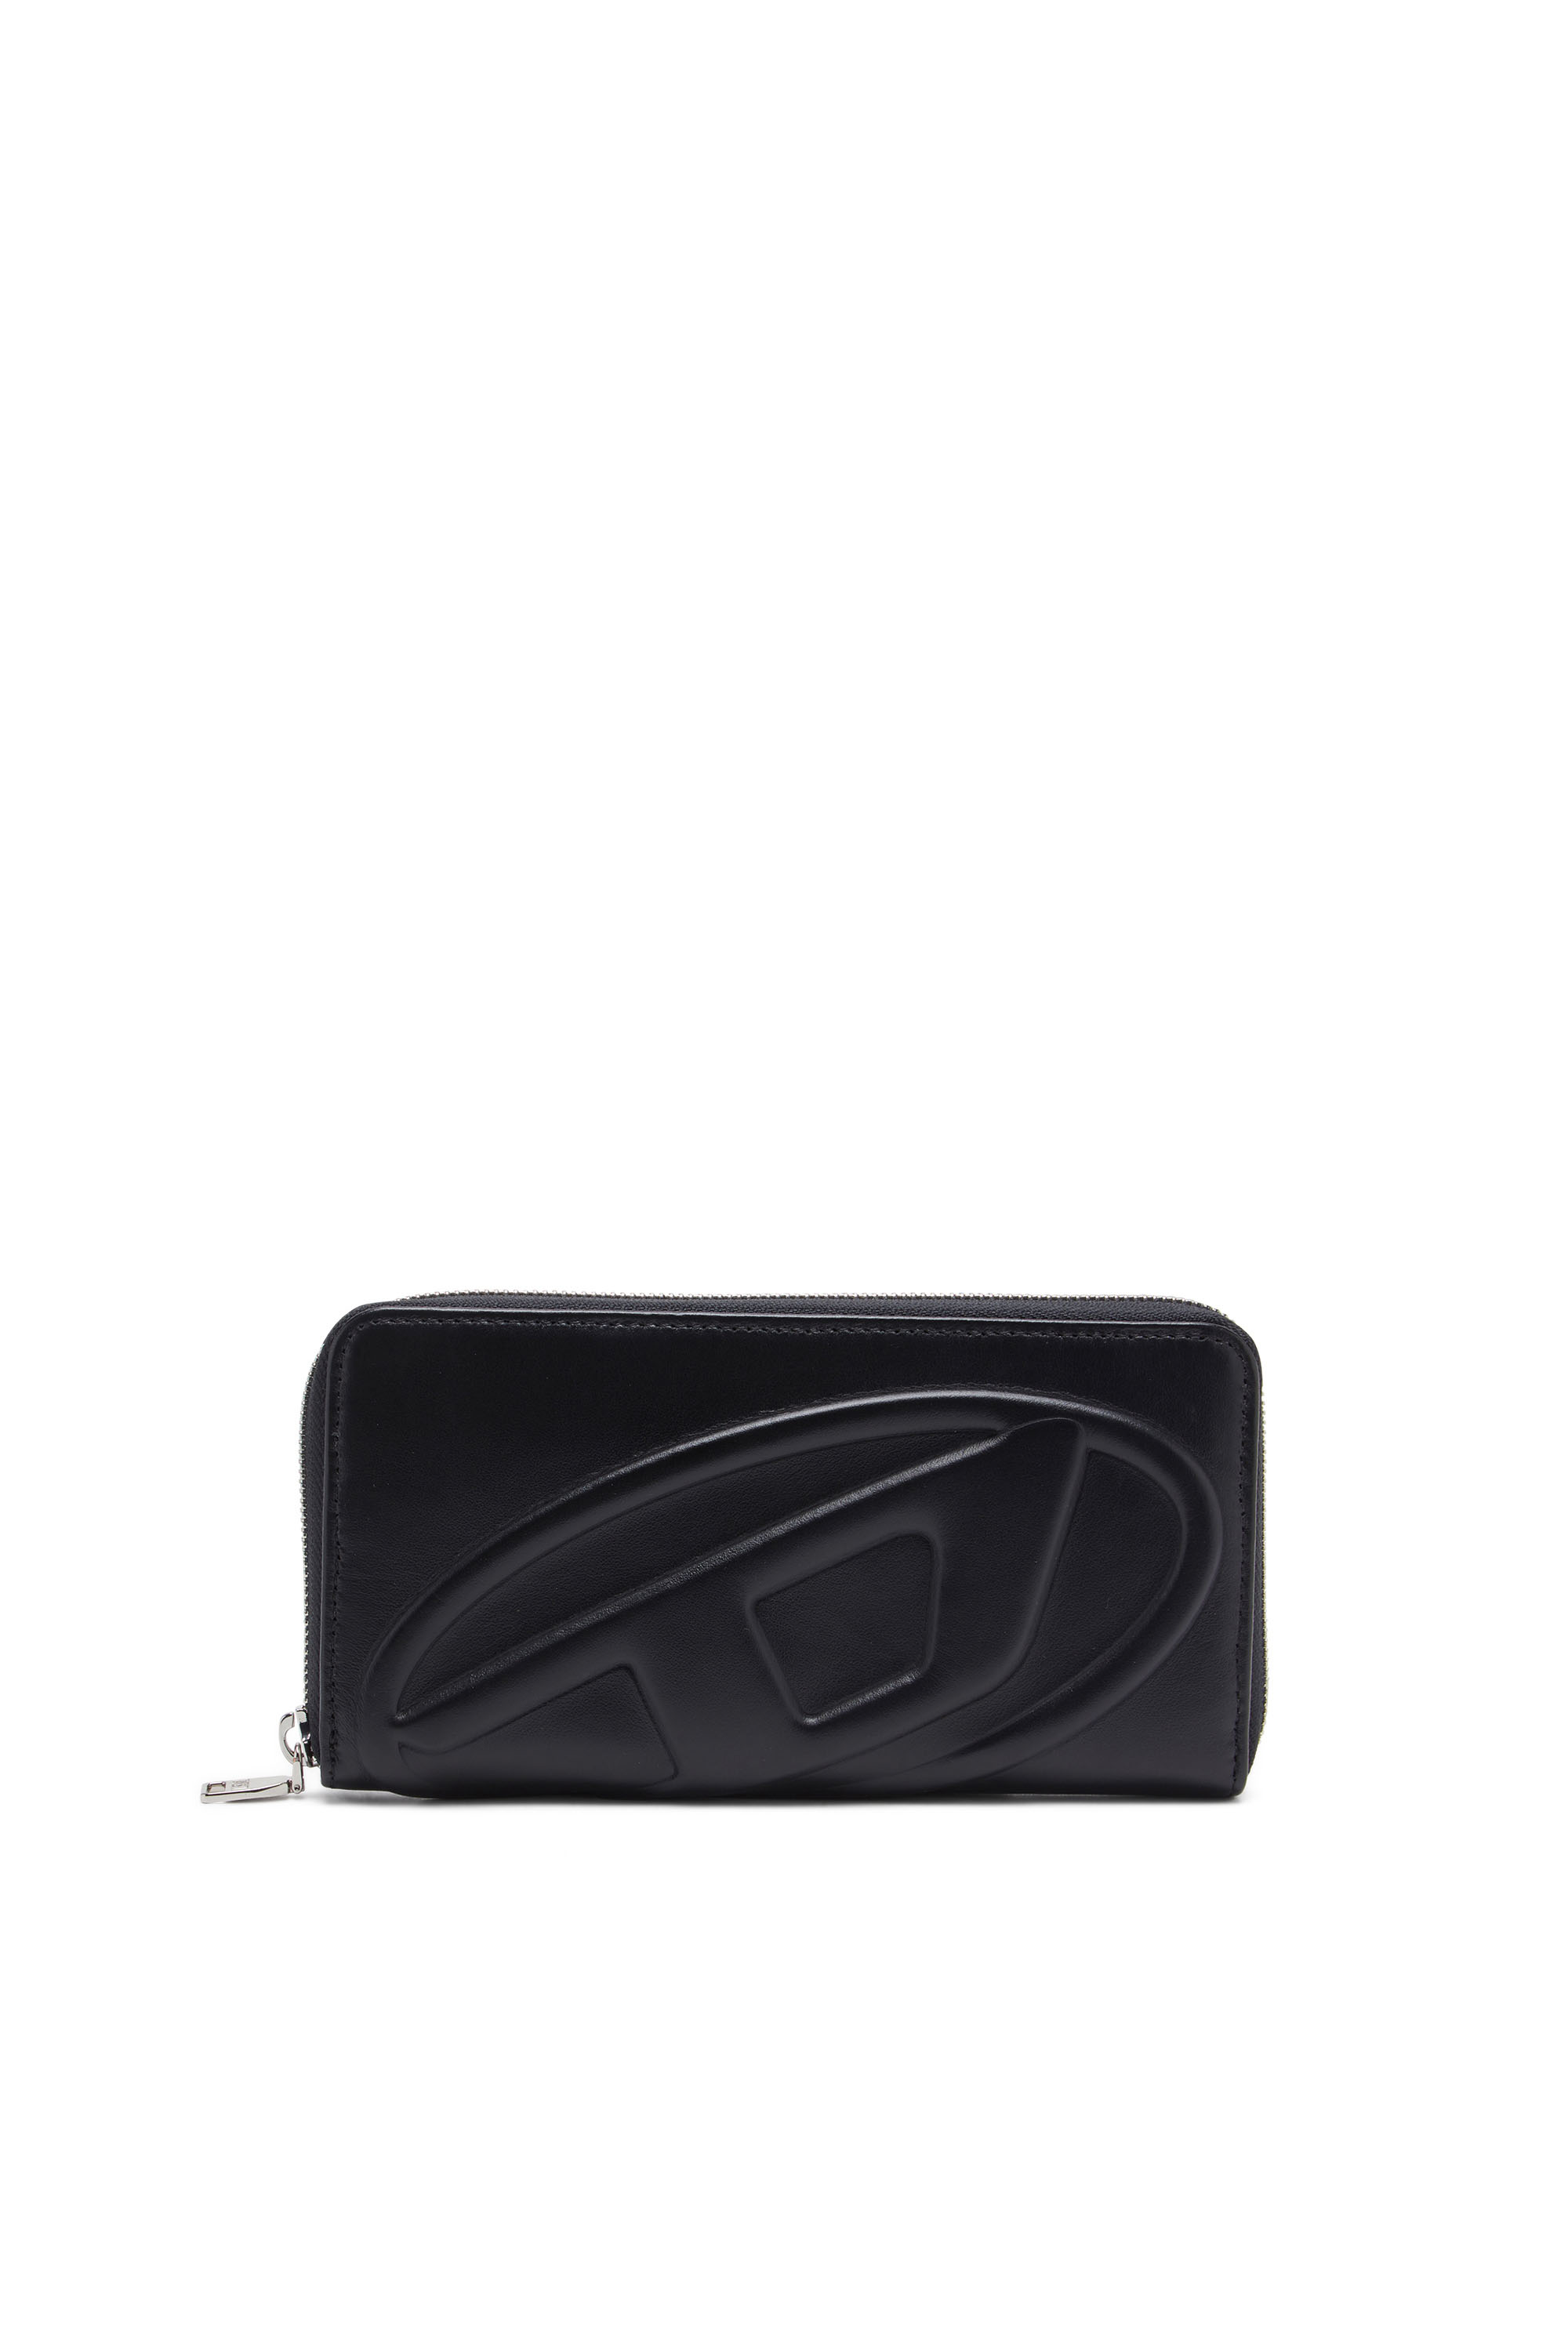 Diesel - Long portefeuille zippé avec logo embossé - Portefeuilles Zippés - Femme - Noir